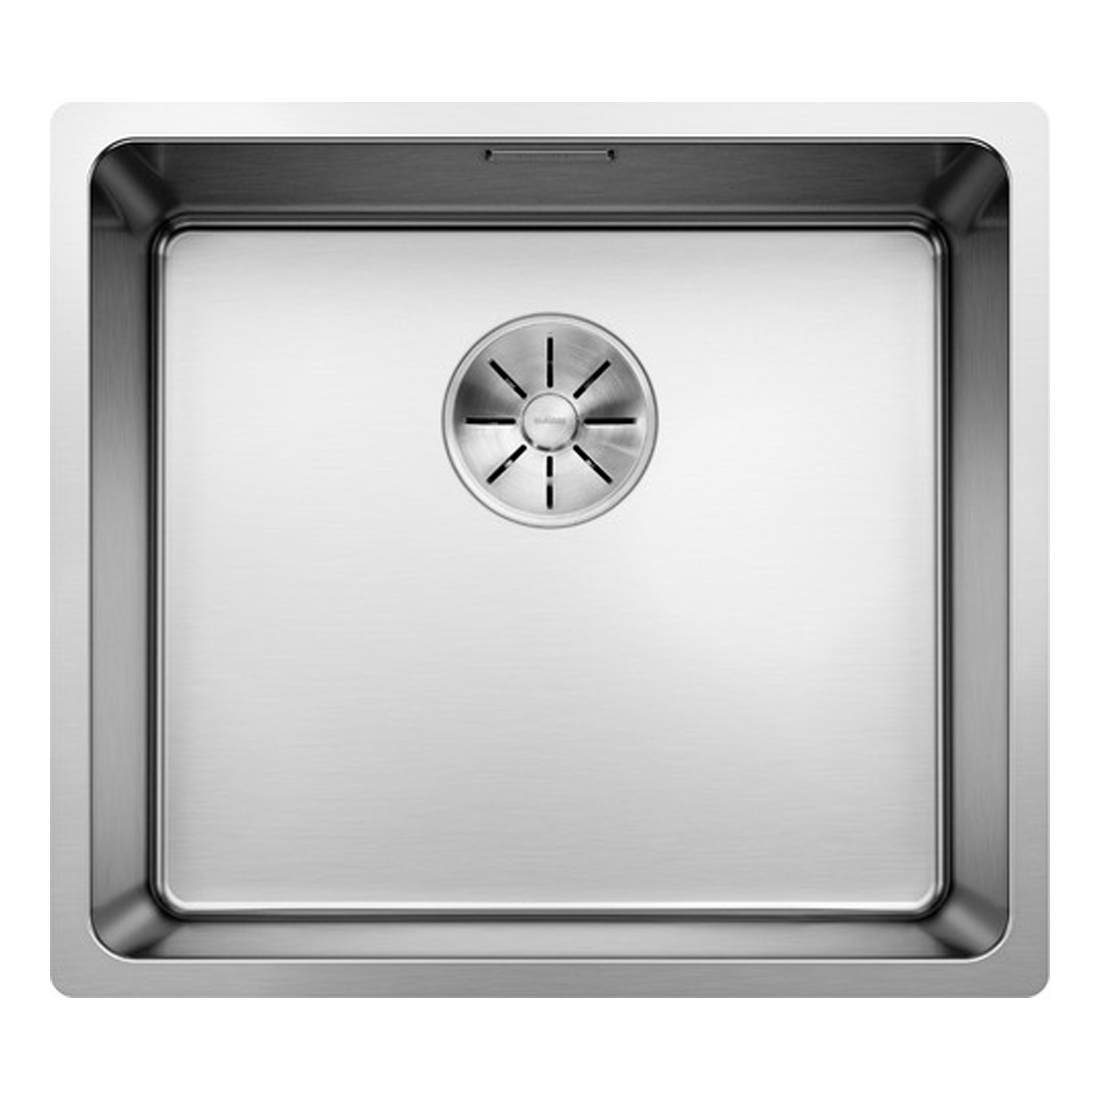 Кухонная мойка Blanco Andano 450-U полированная сталь кухонная мойка reginox amazone l lux osp сталь